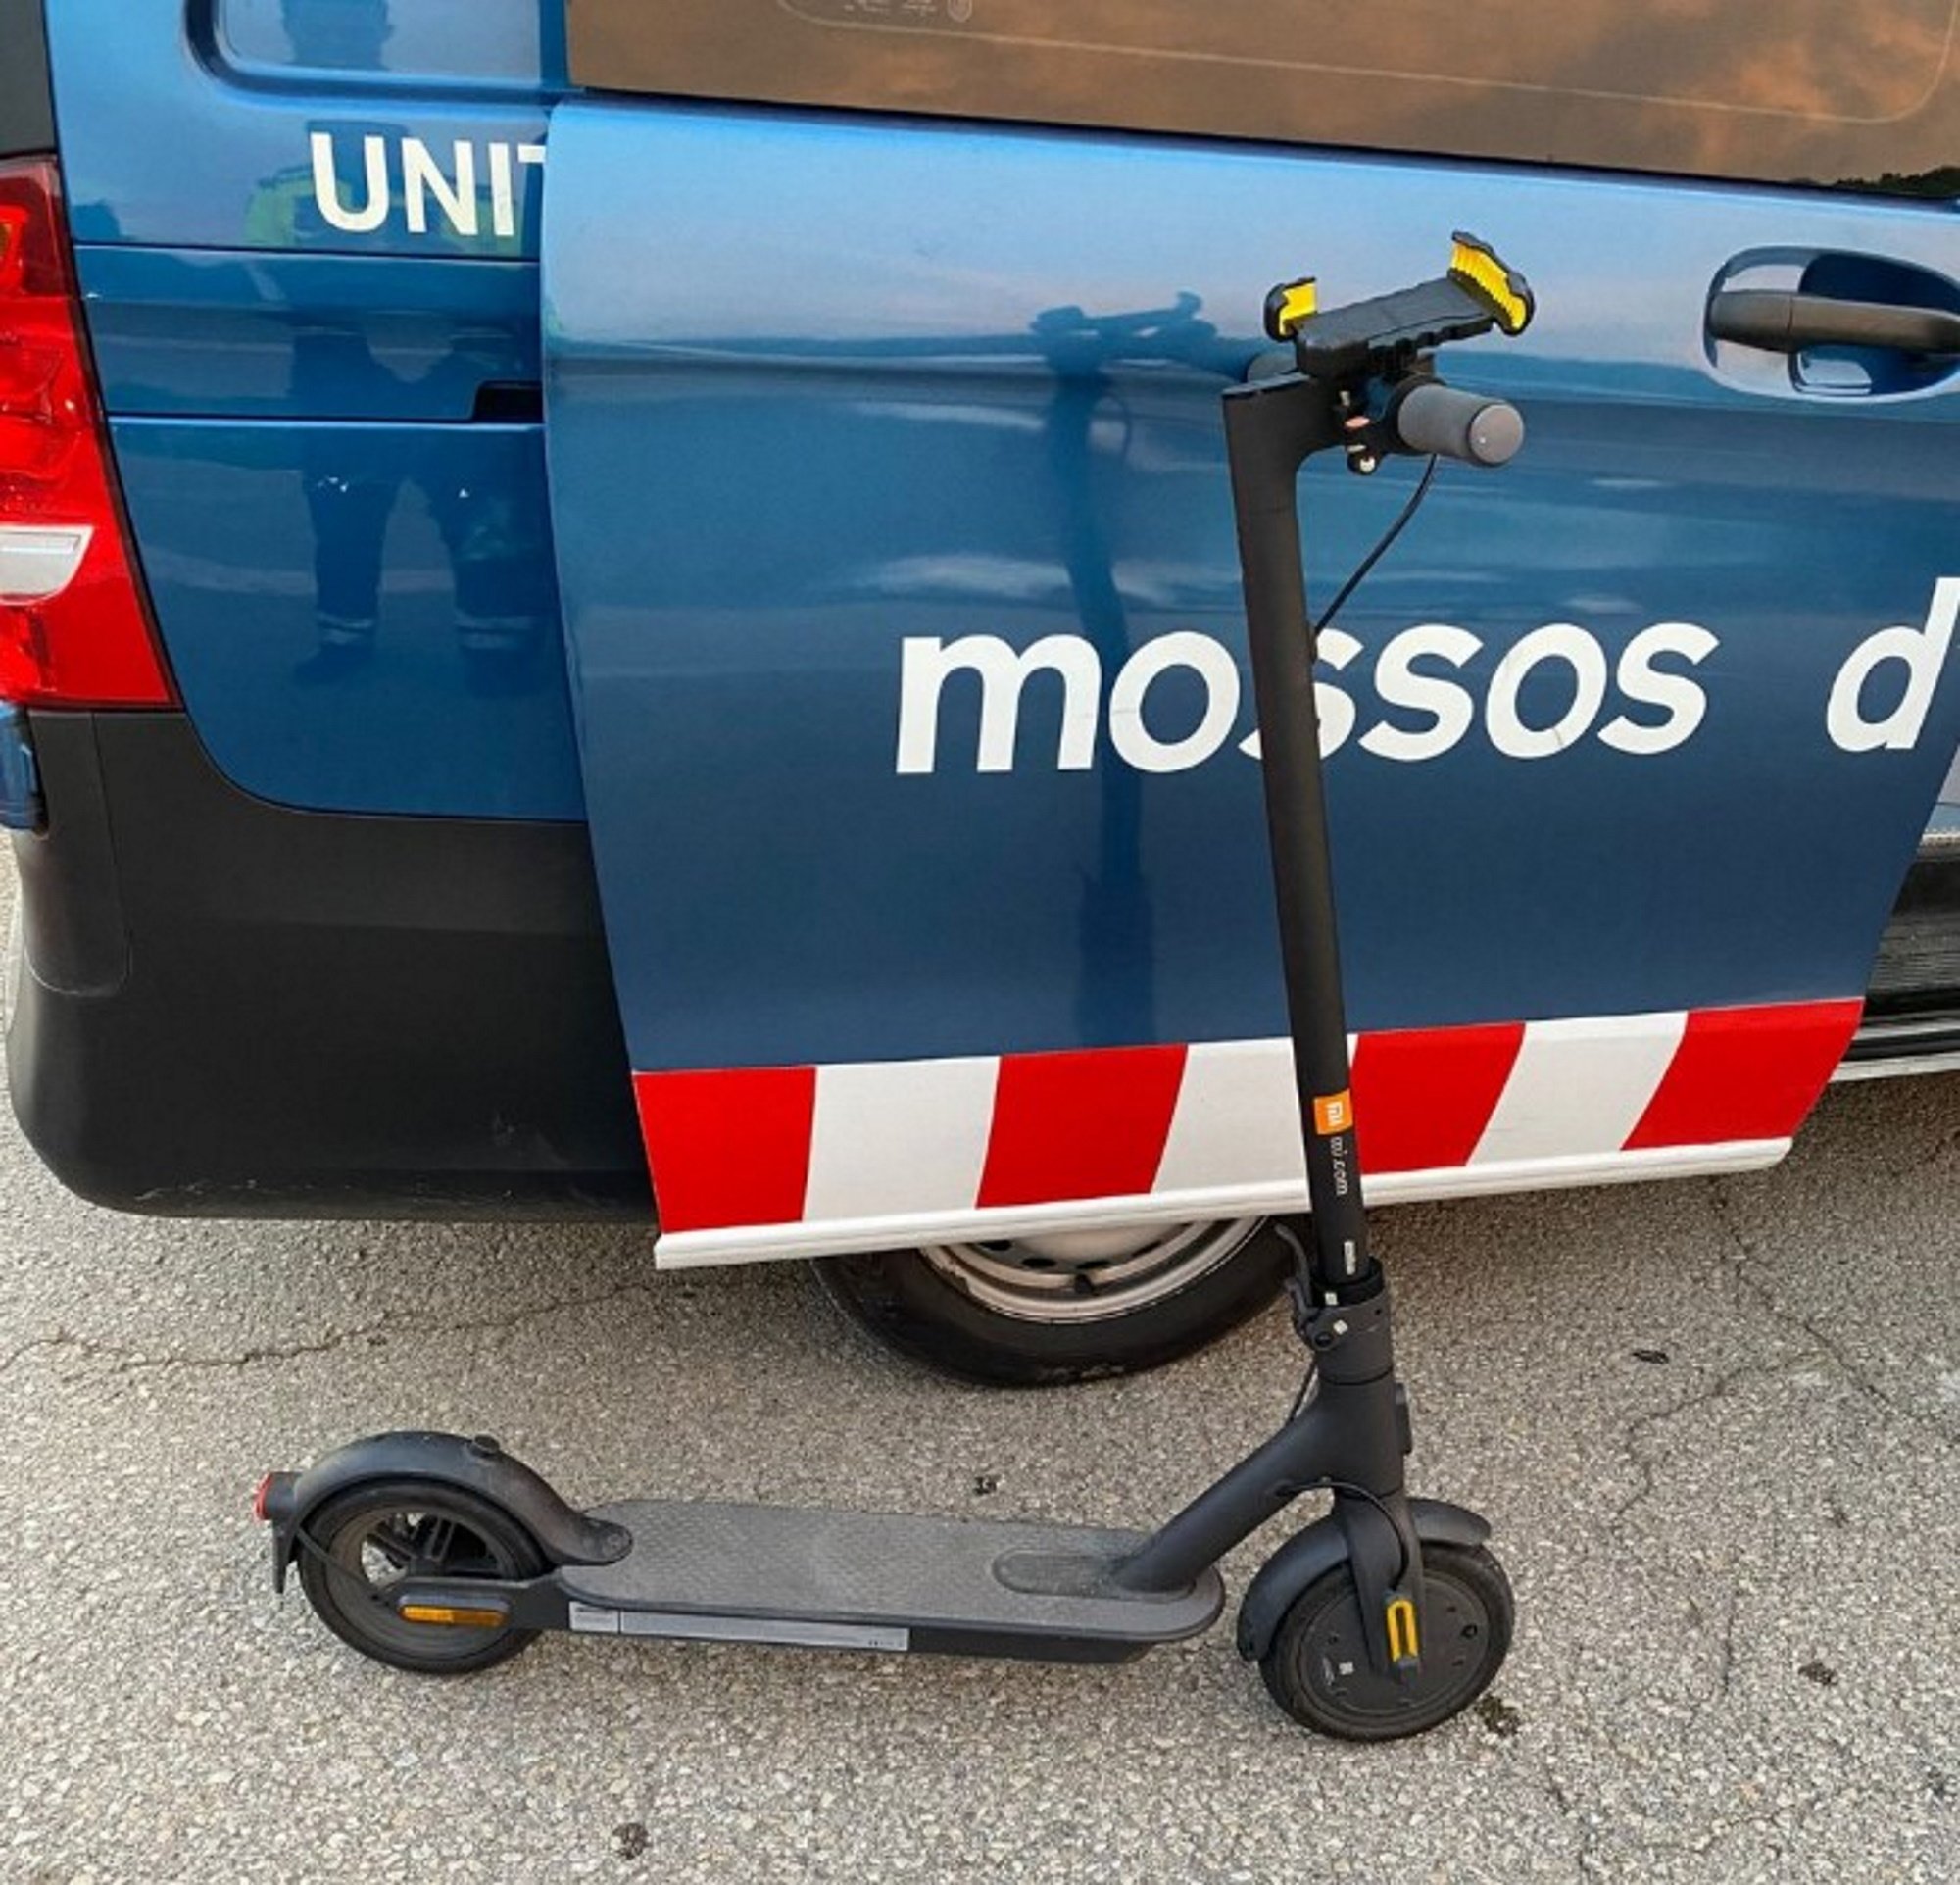 denuncien conductor patinet electric circular borratxo carretera n 260 mossos